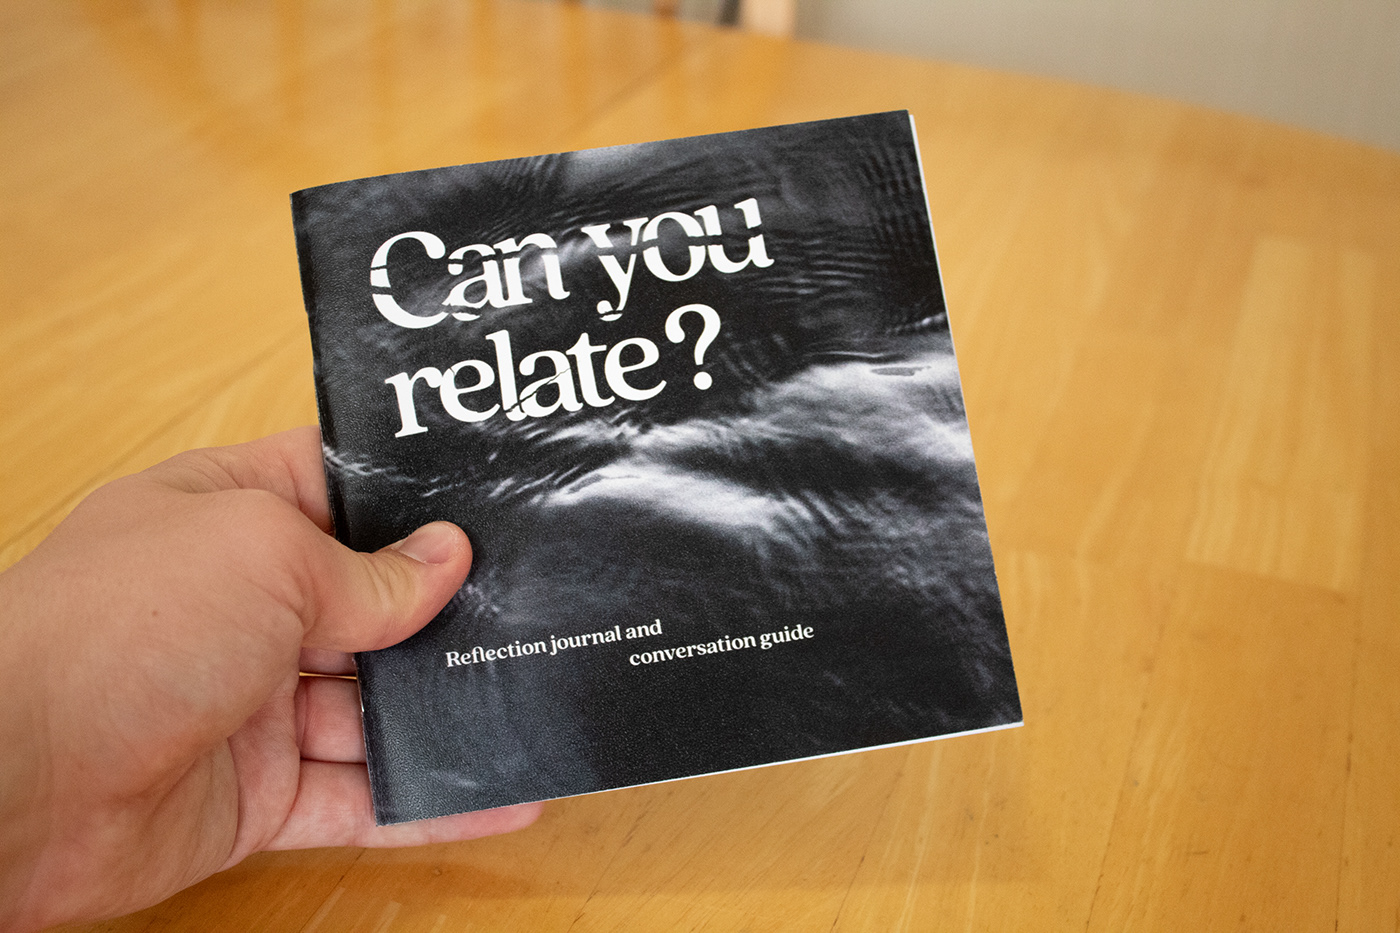 book book design Christian conversation daap design Guide journal reflection University of Cincinnati